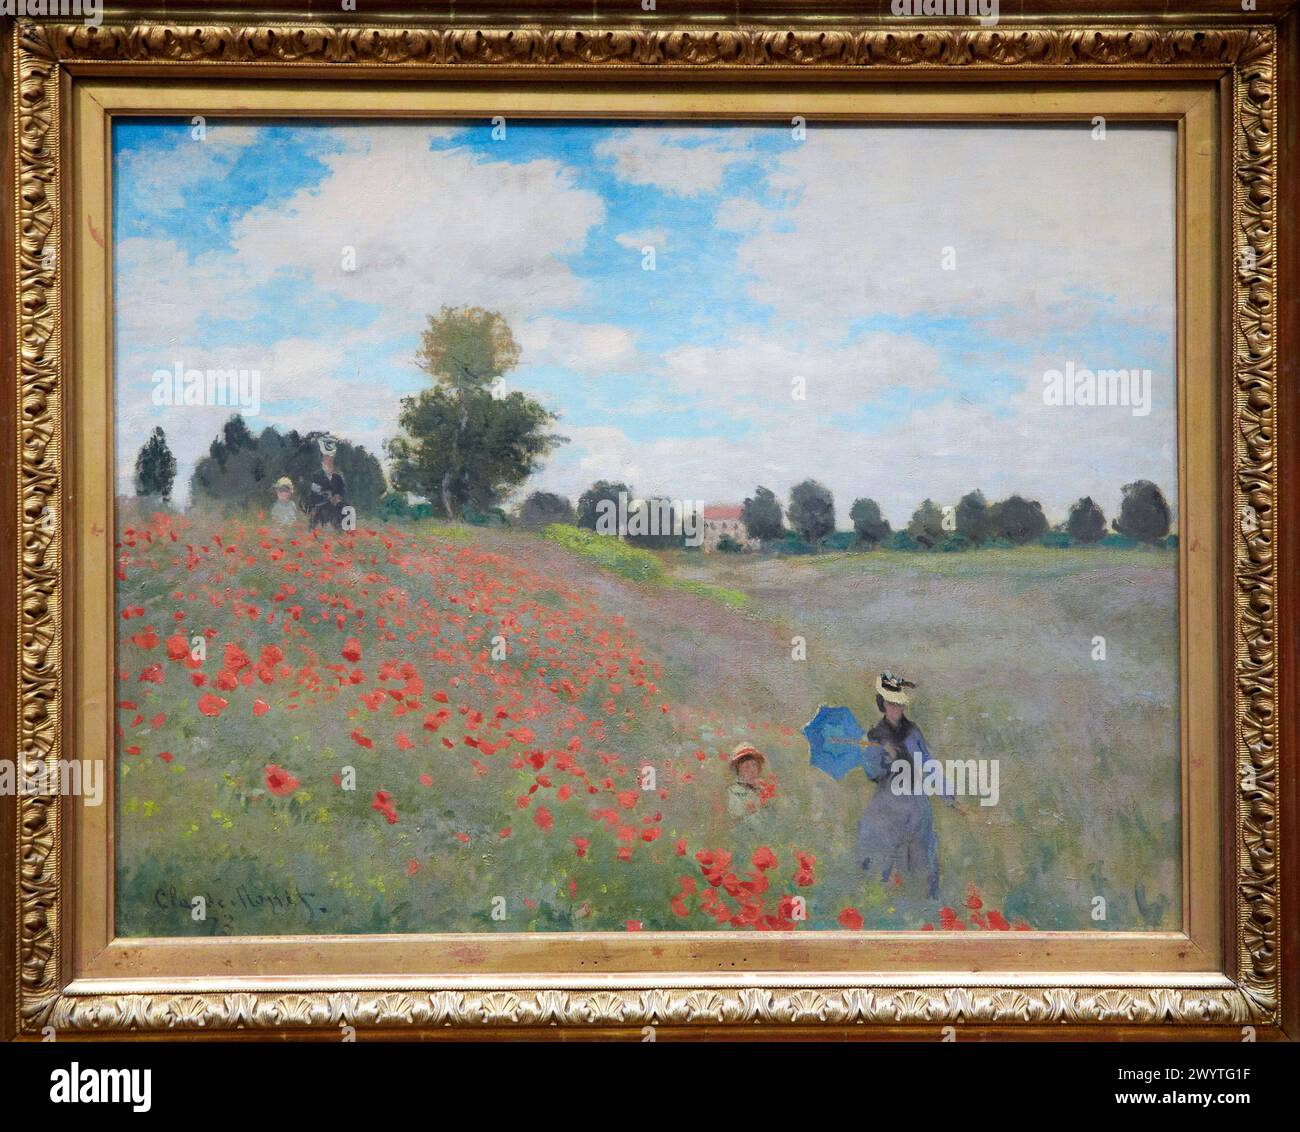 Coquelicots à Argenteuil, 1873, Claude Monet (1840-1926), huile sur toile, 50x60 cm. Musée d'Orsay. Musée d'Orsay. Paris. France. Banque D'Images